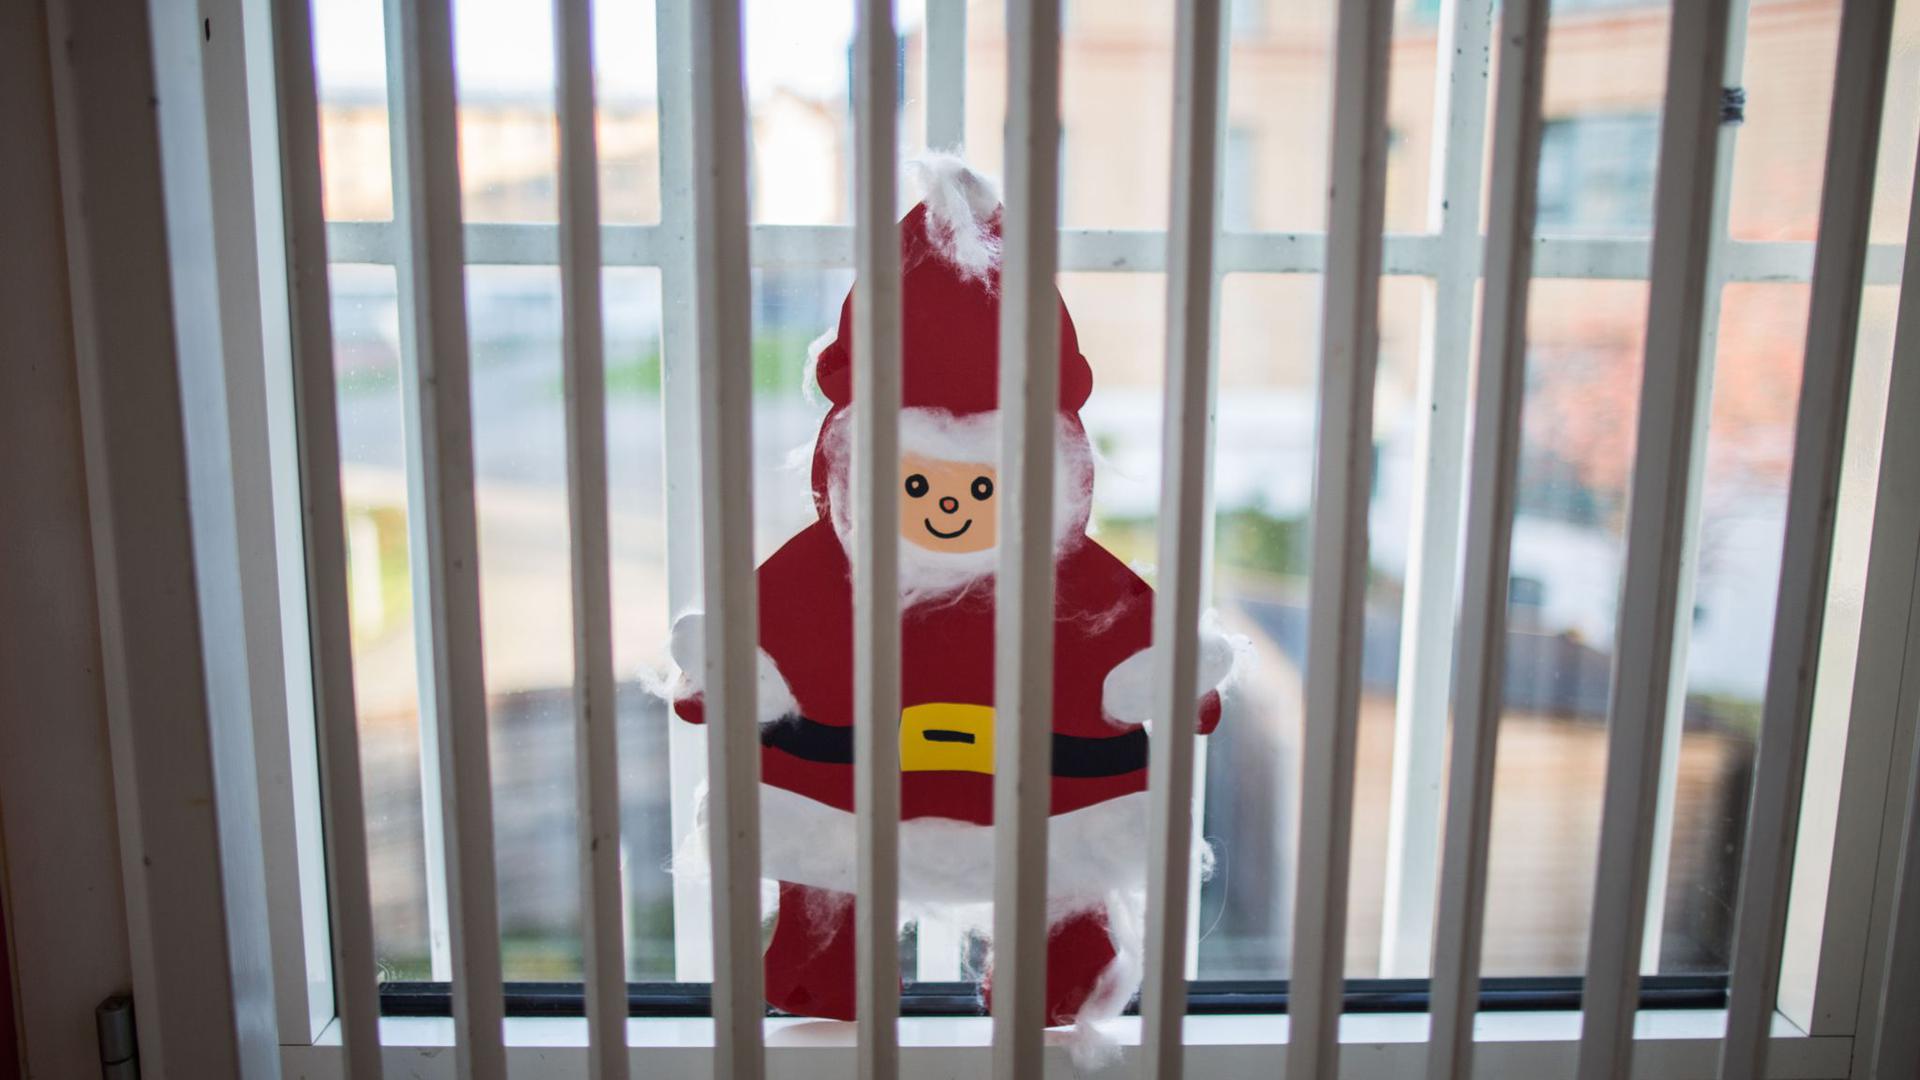 Ein gebastelter Weihnachtsmann klebt hinter einem Gitter einer Justizvollzugsanstalt an der Fensterscheibe.